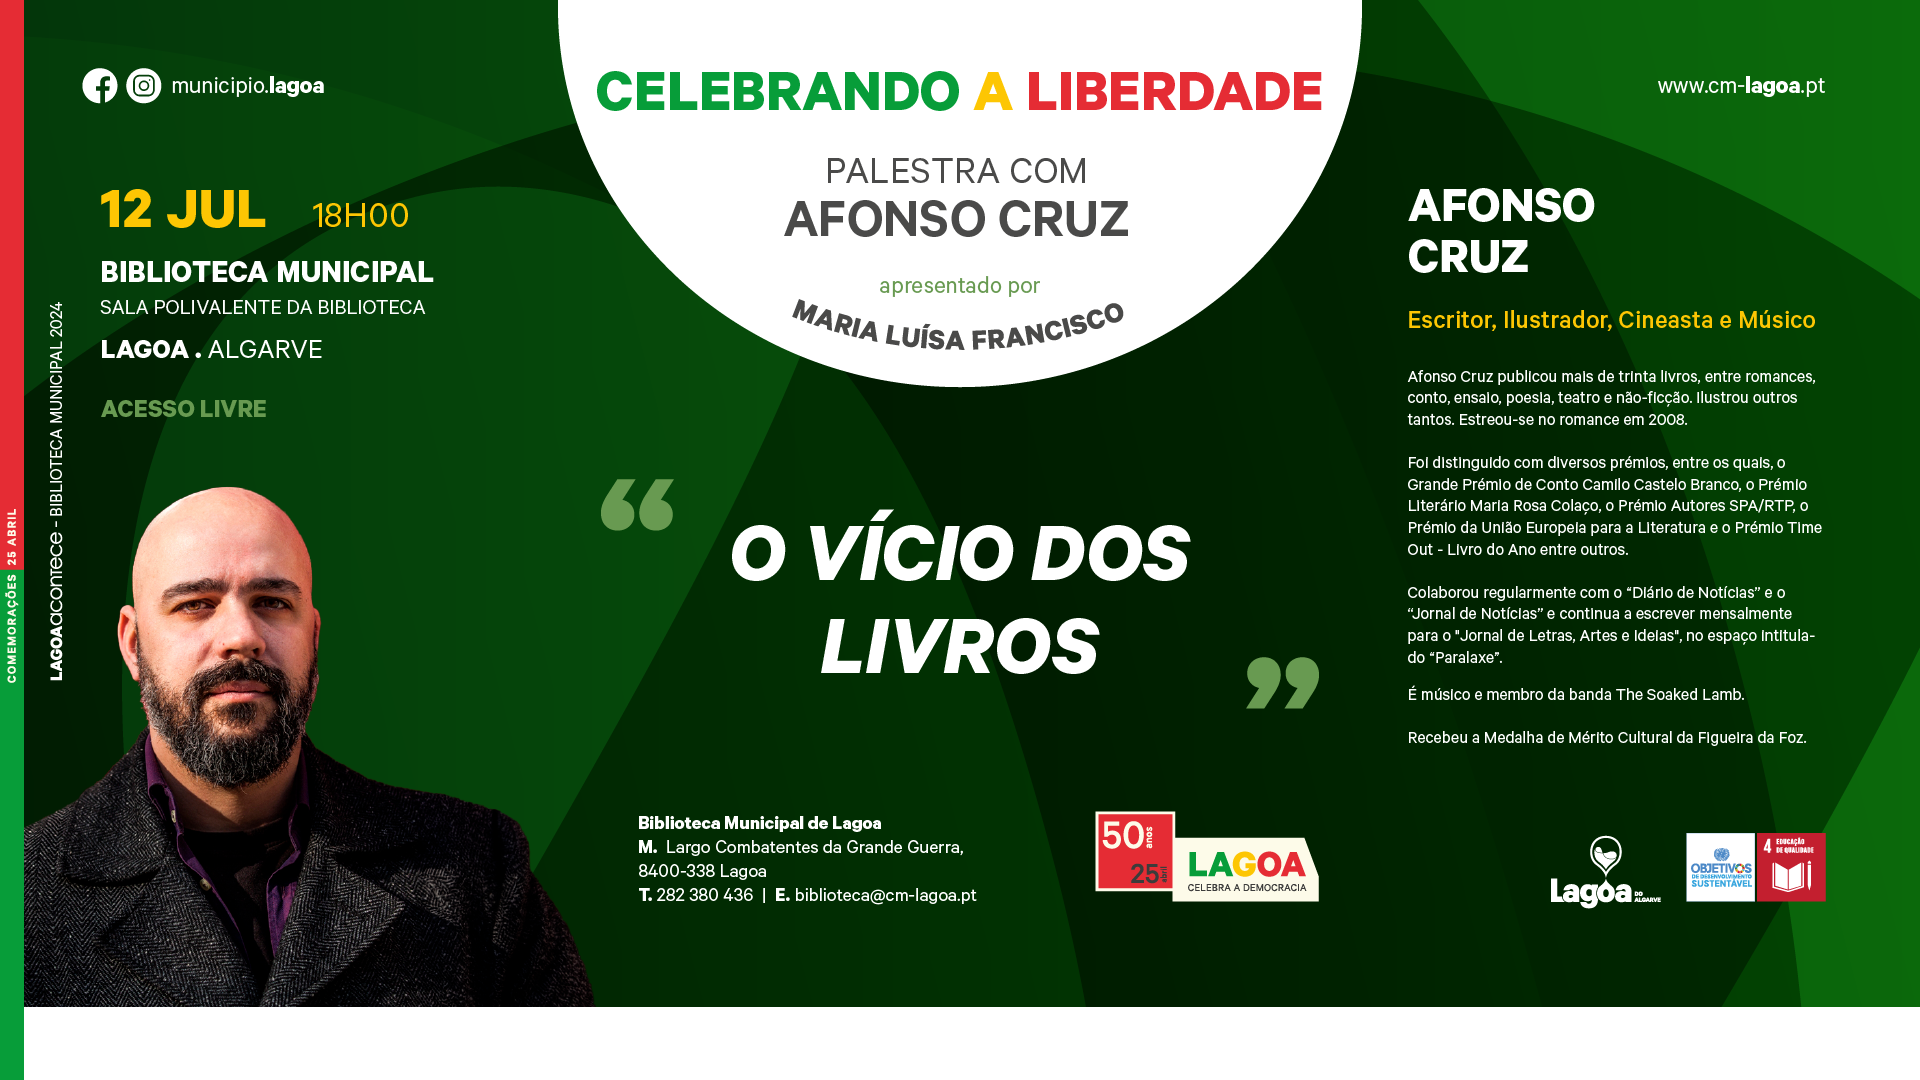 Celebrando a Liberdade: Palestra Literária com o escritor Afonso Cruz -   “O vício dos livros”.  